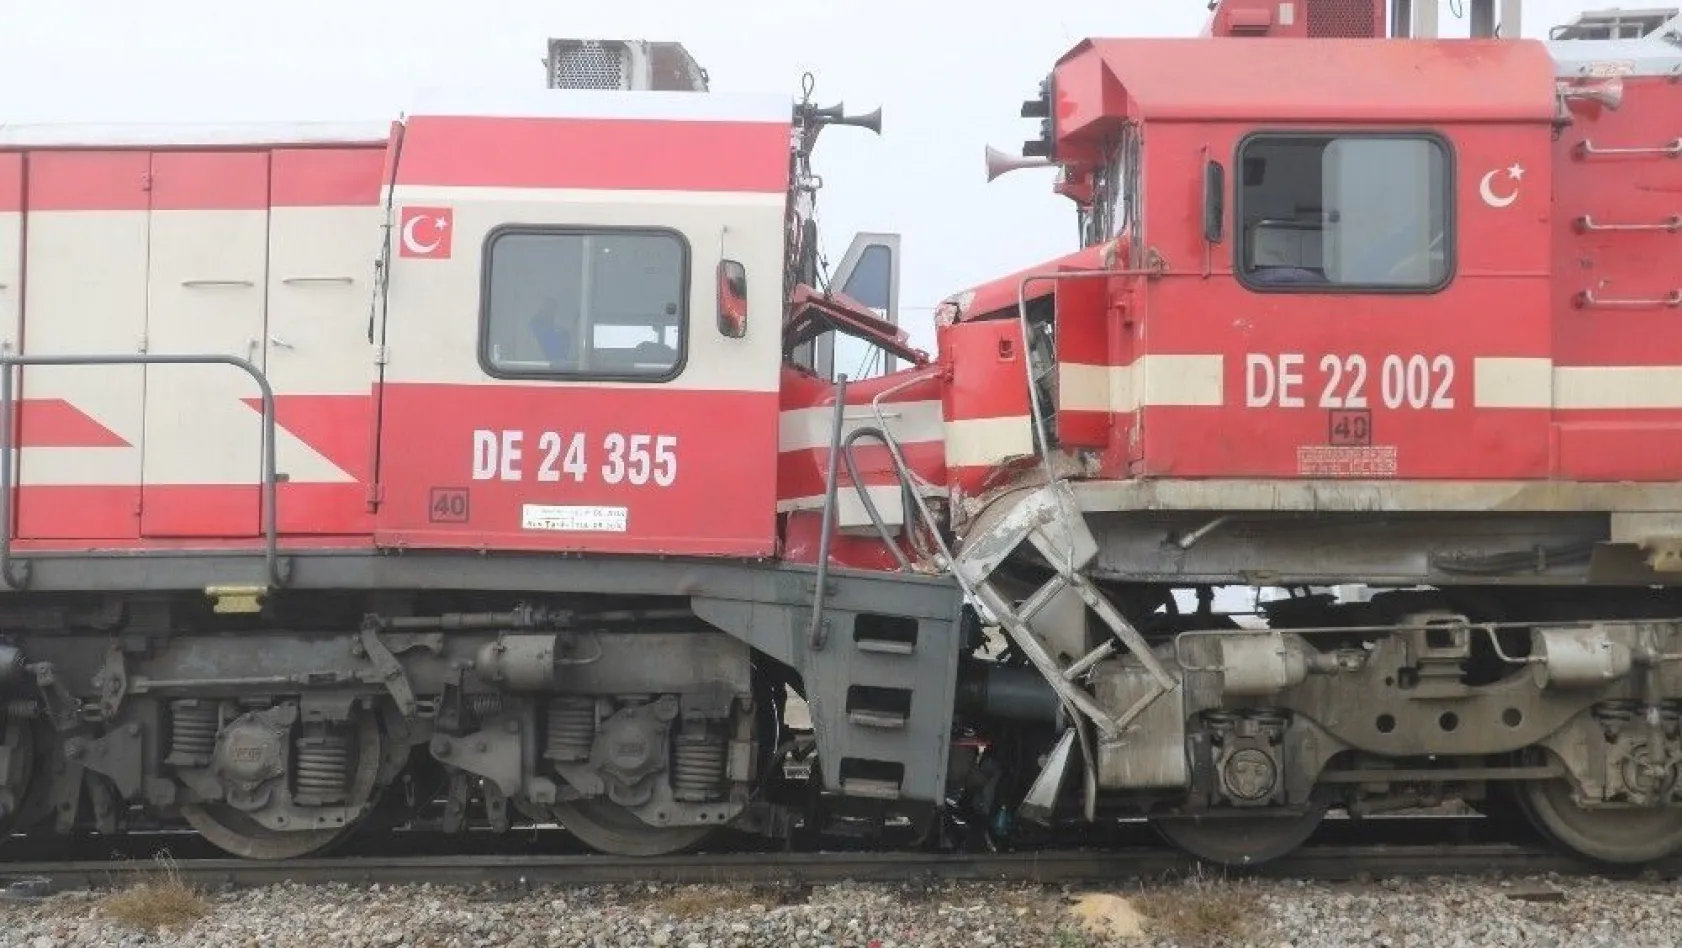 Sivas'ta yolcu treni ile yük treni çarpıştı: 14 yaralı
